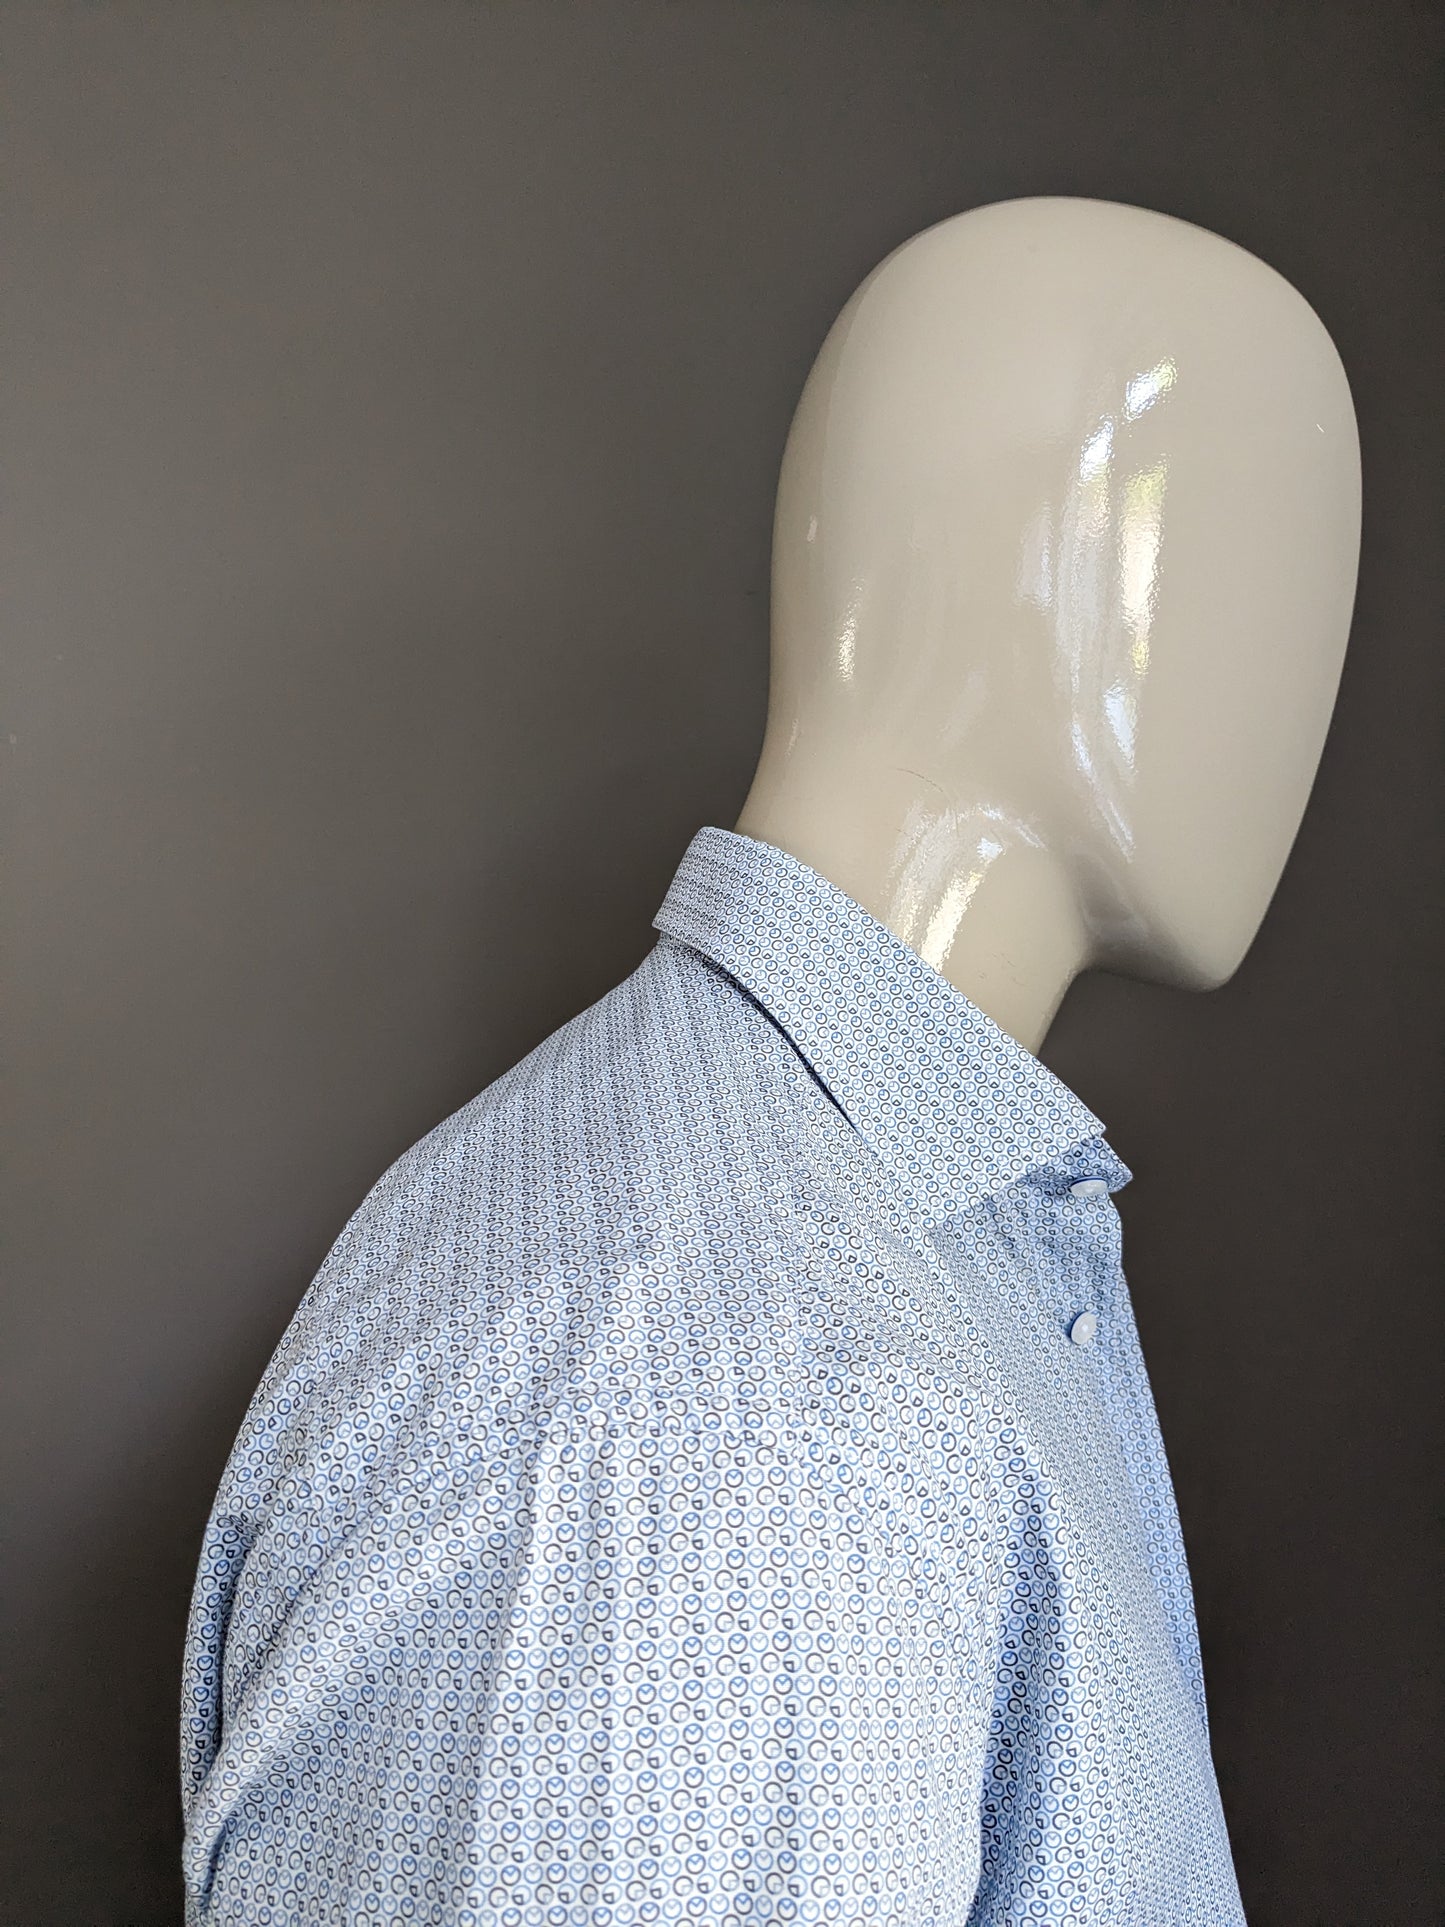 Max Goodman shirt. Blue brown white print. Size L.